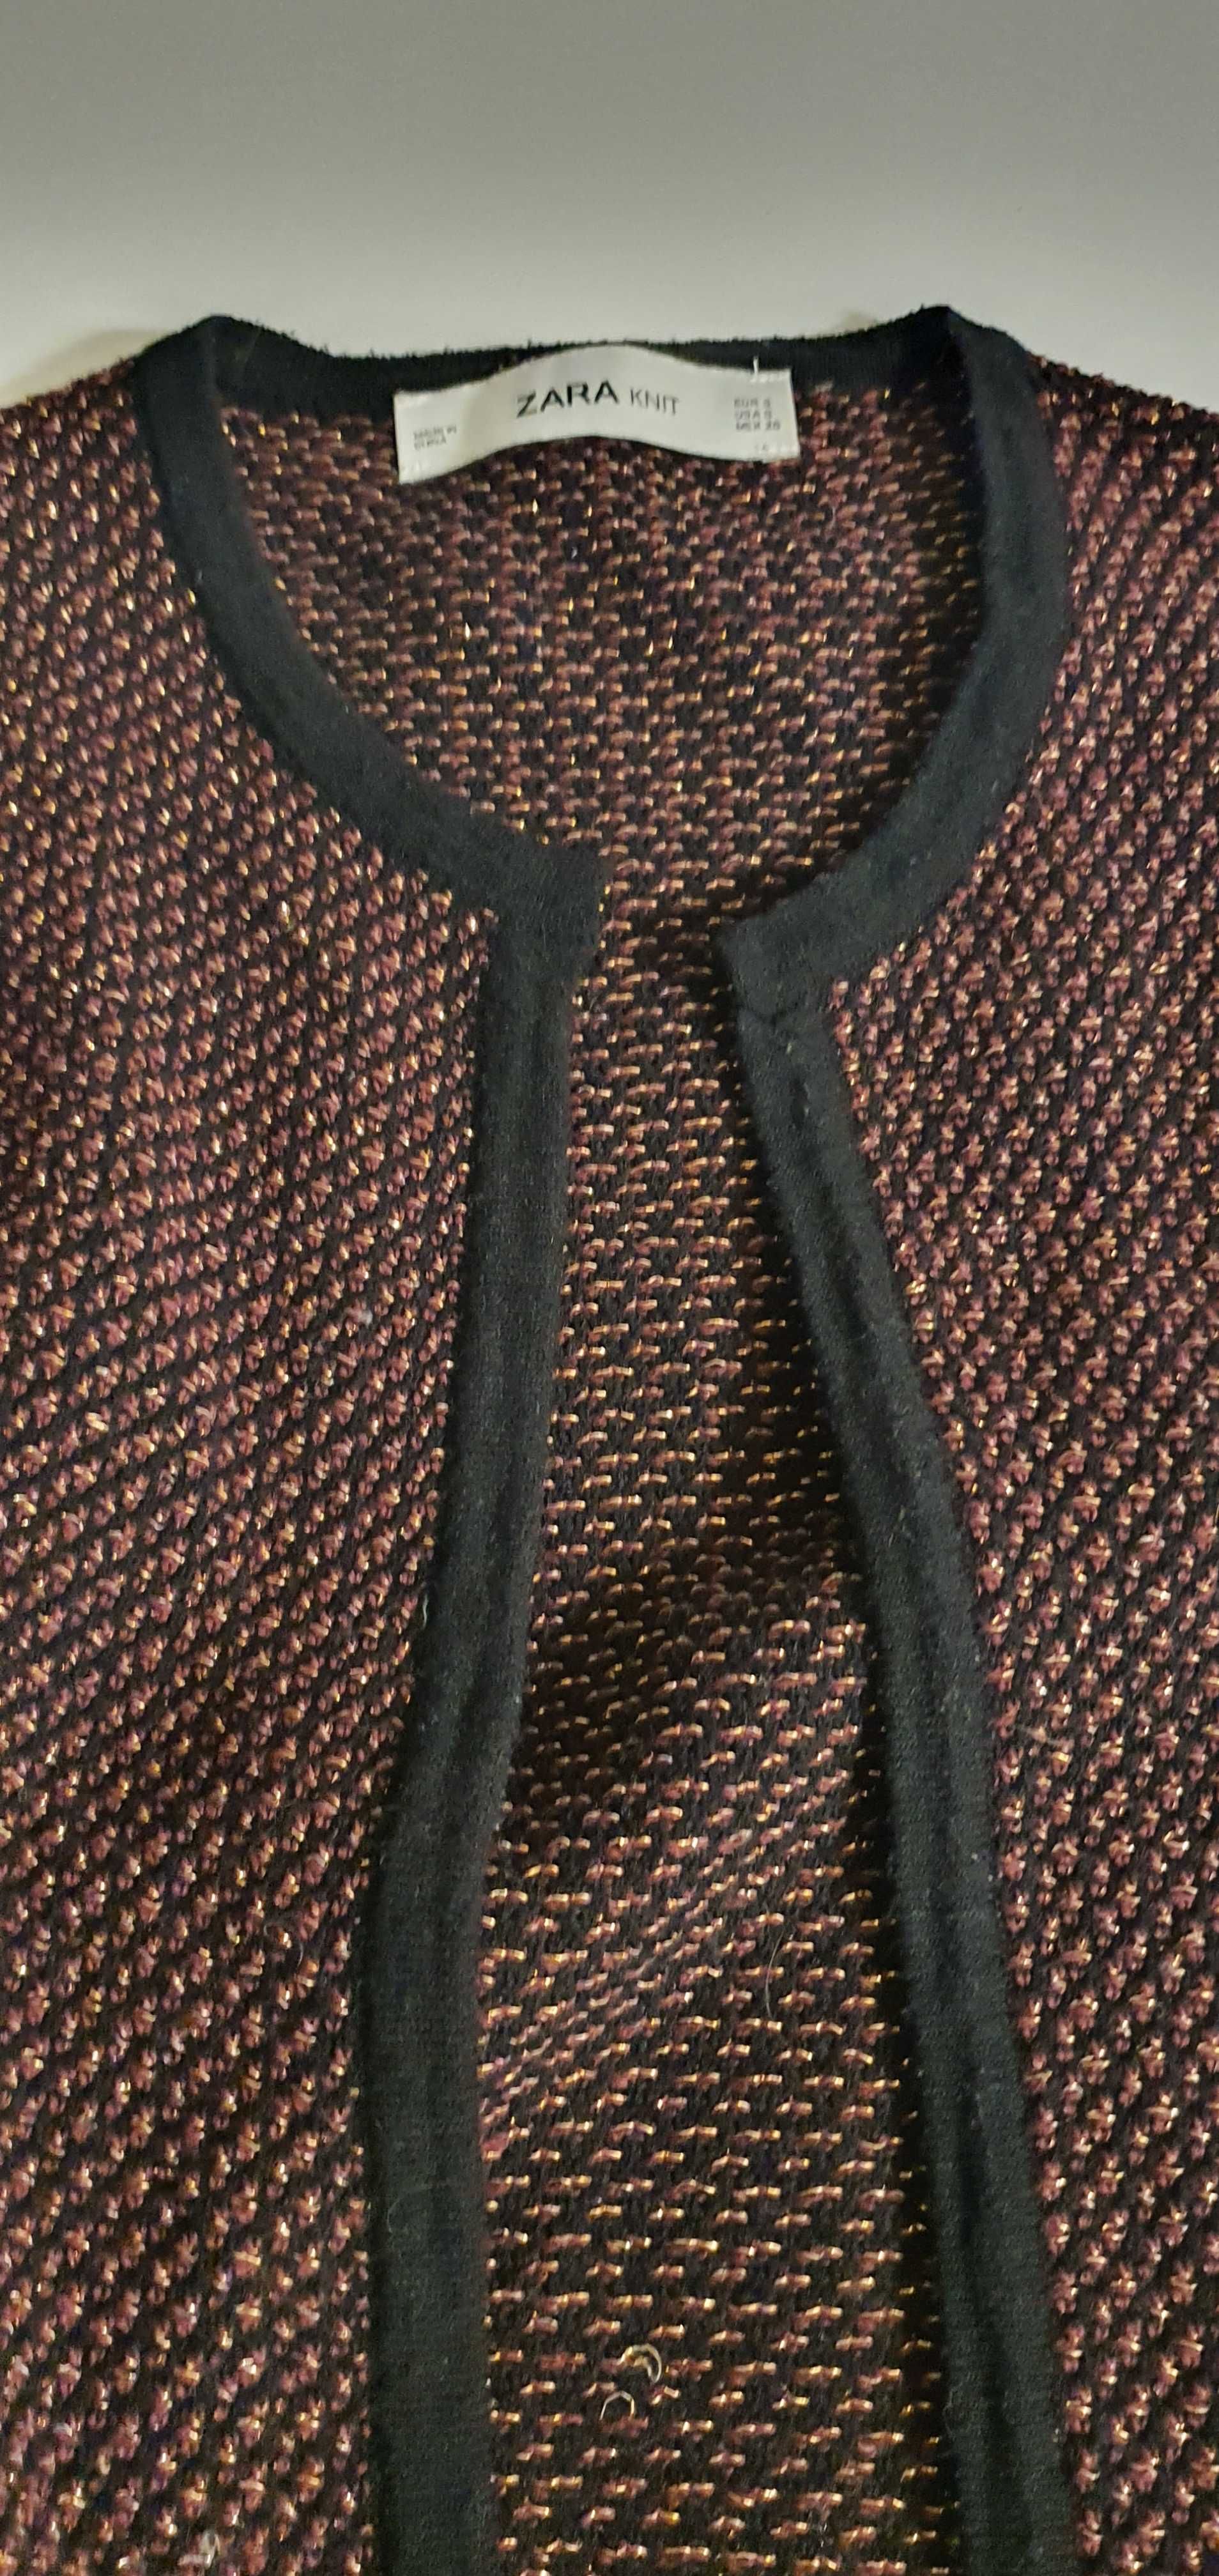 Sweterek damski Zara rozpinany długi kardigan narzutka rozm. S/M